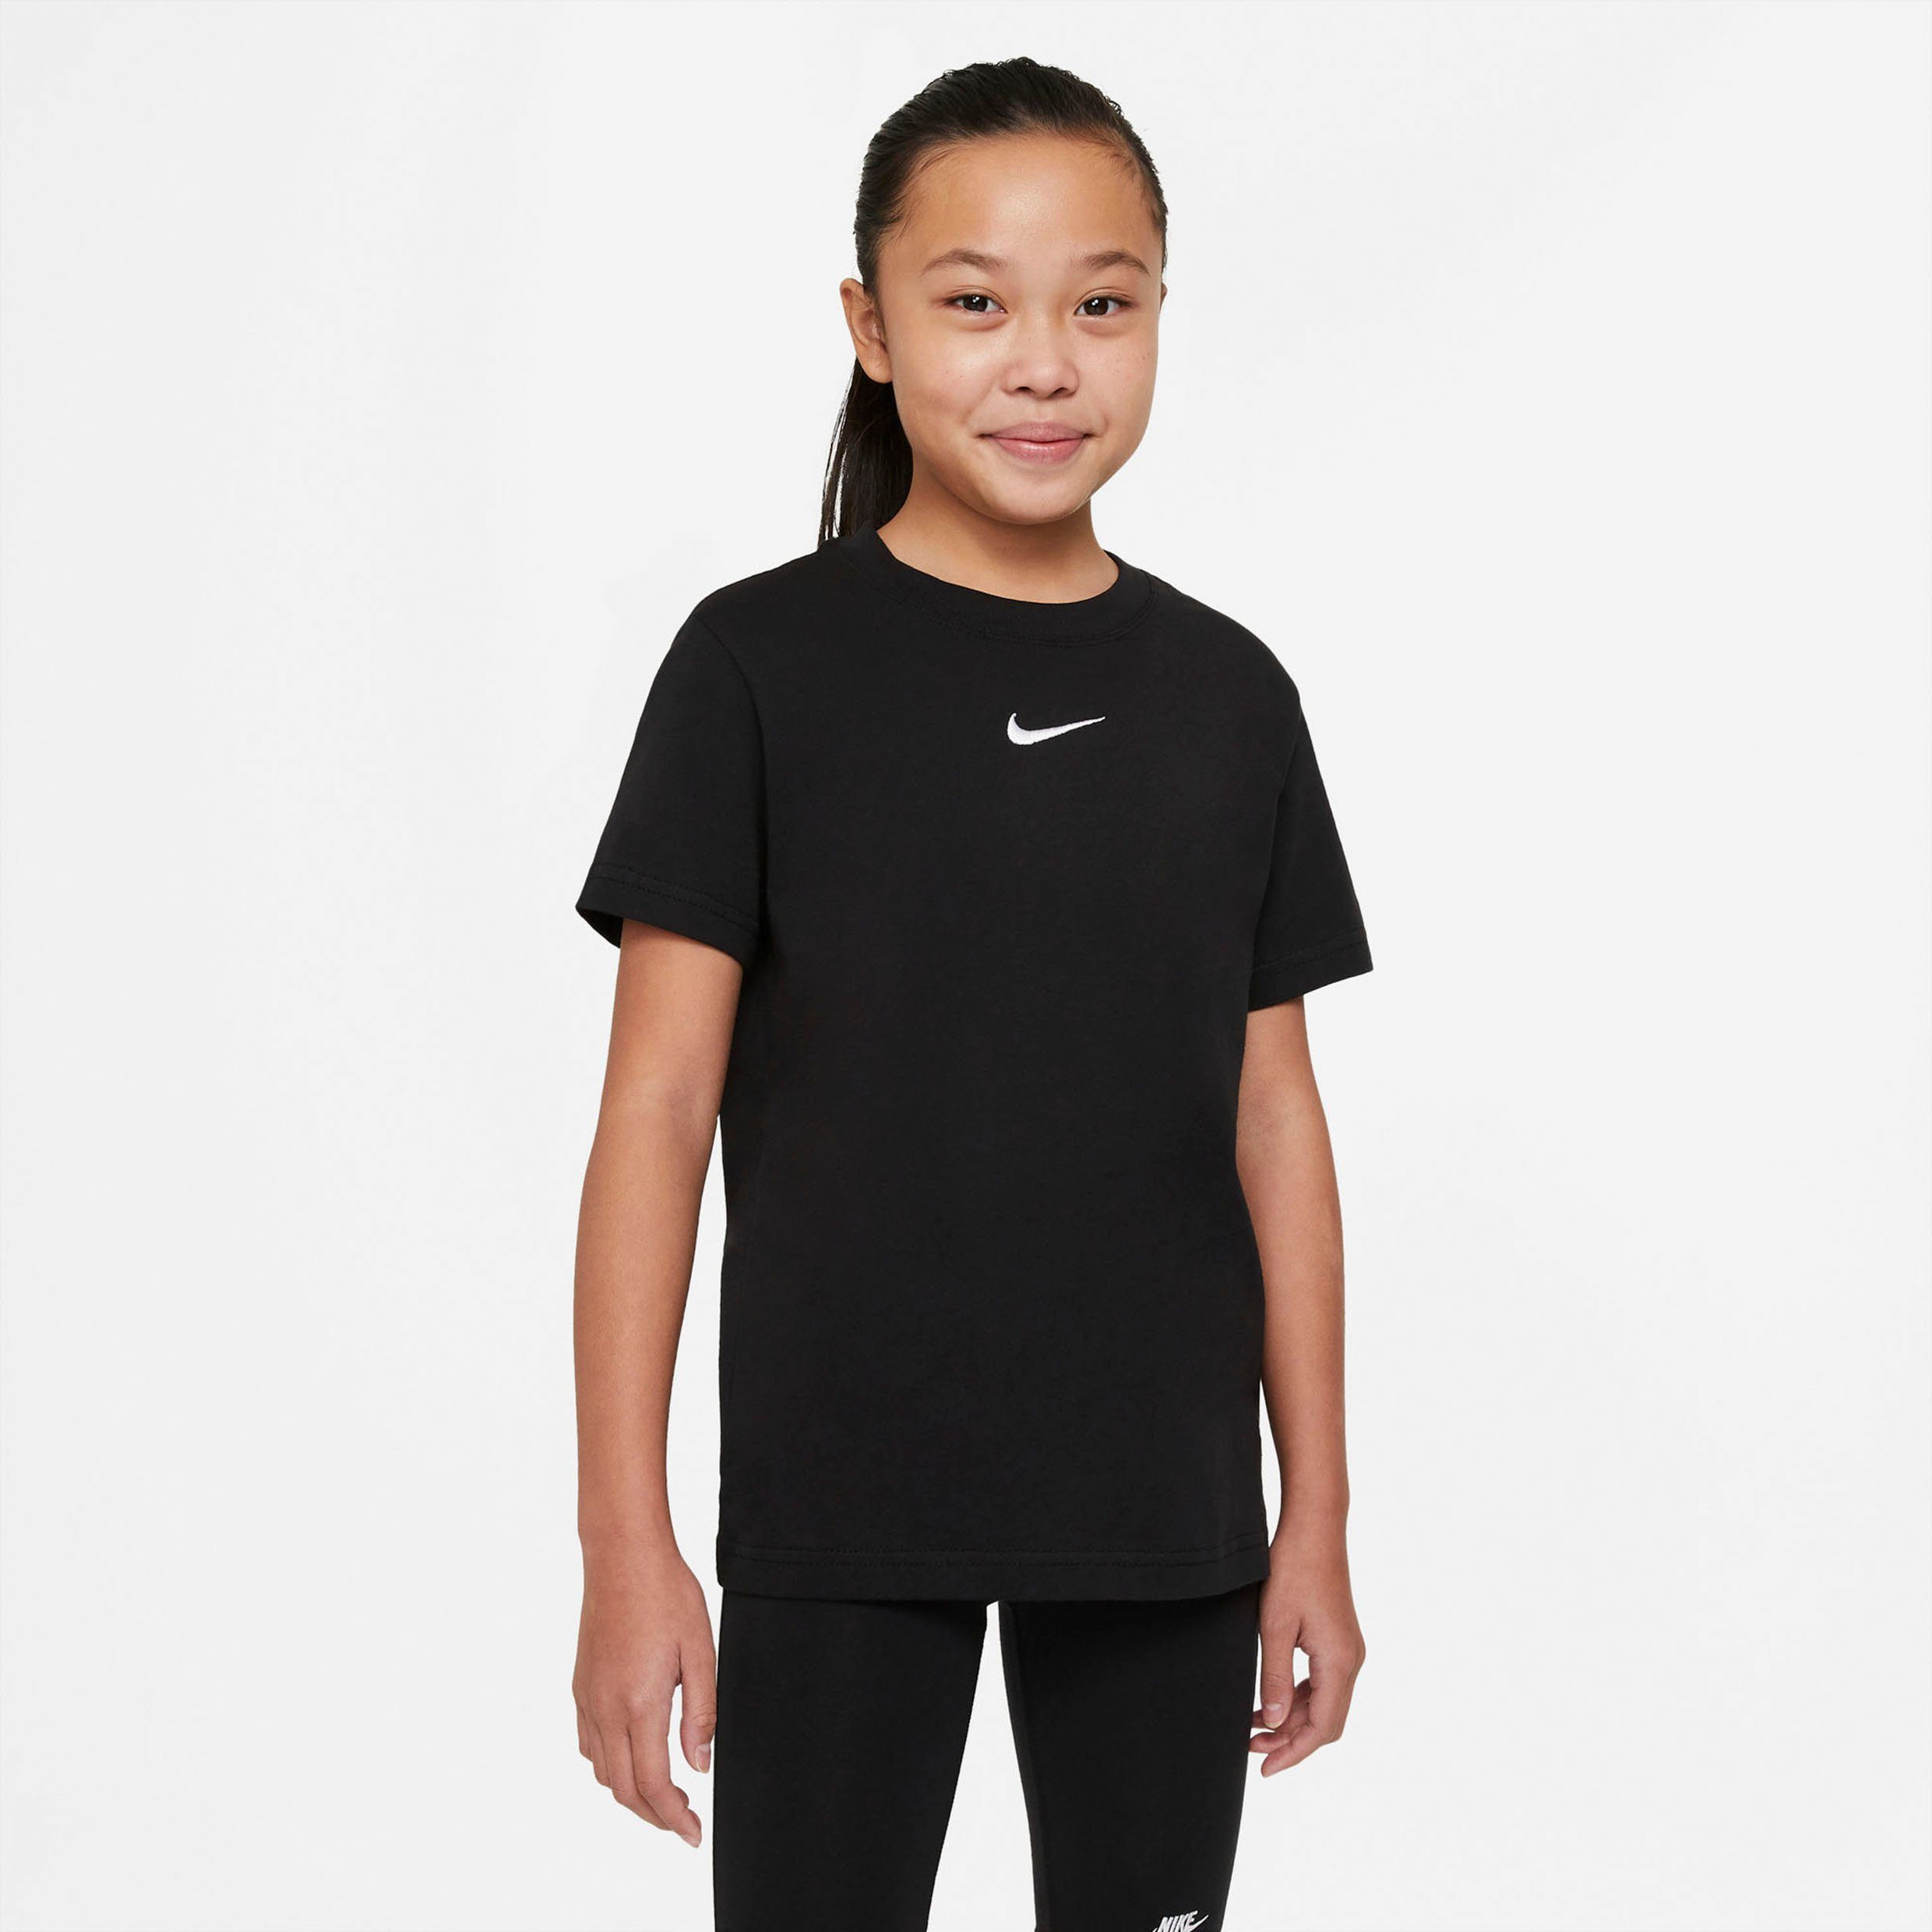 Beliebt & neu! (Girls) Big Nike Sportswear T-Shirt T-Shirt Kids' schwarz